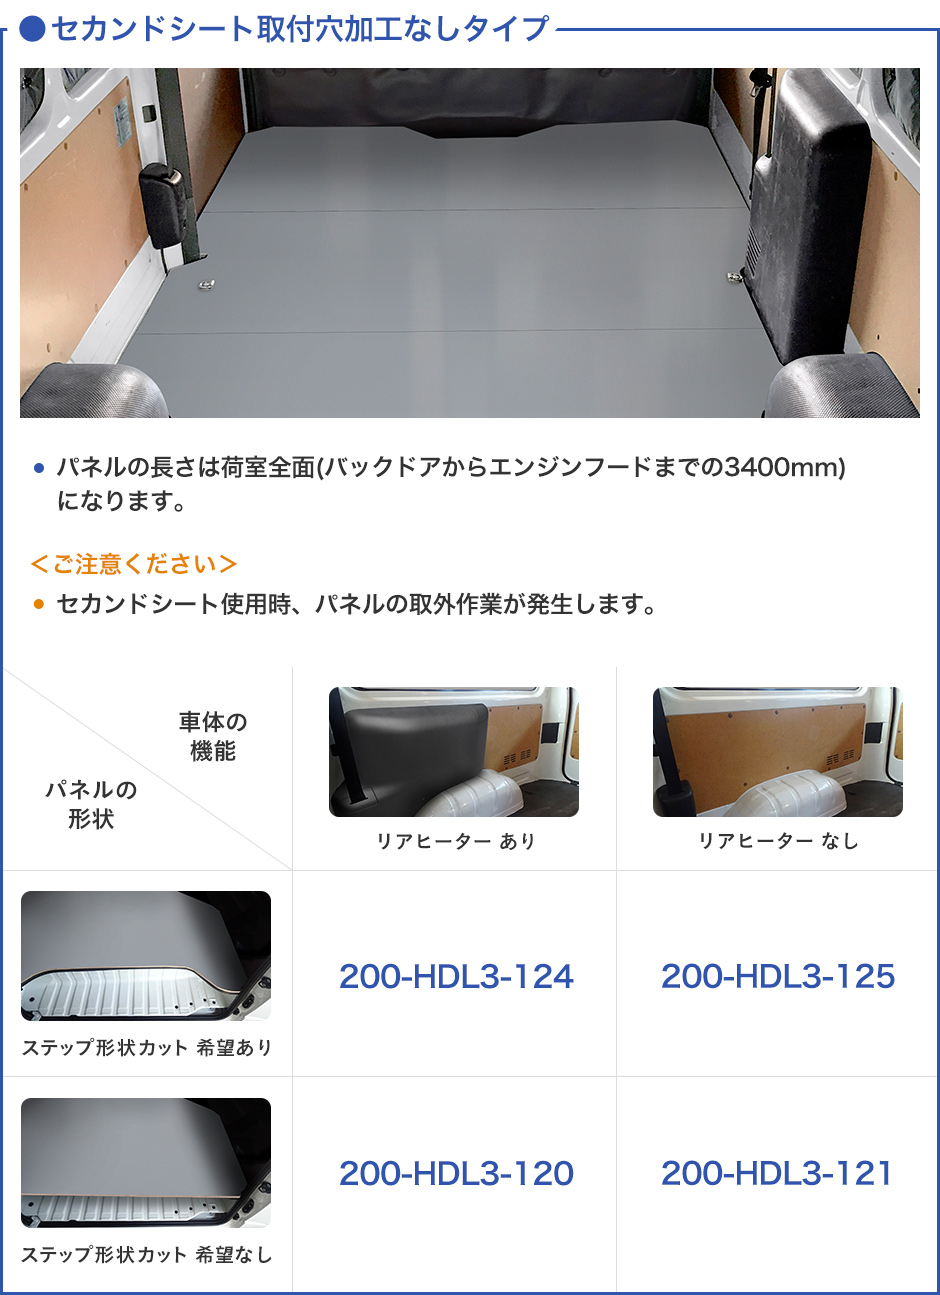 トヨタ 200系 ハイエース DX スーパーロング フロアパネル【フルサイズパネル/4ドア】